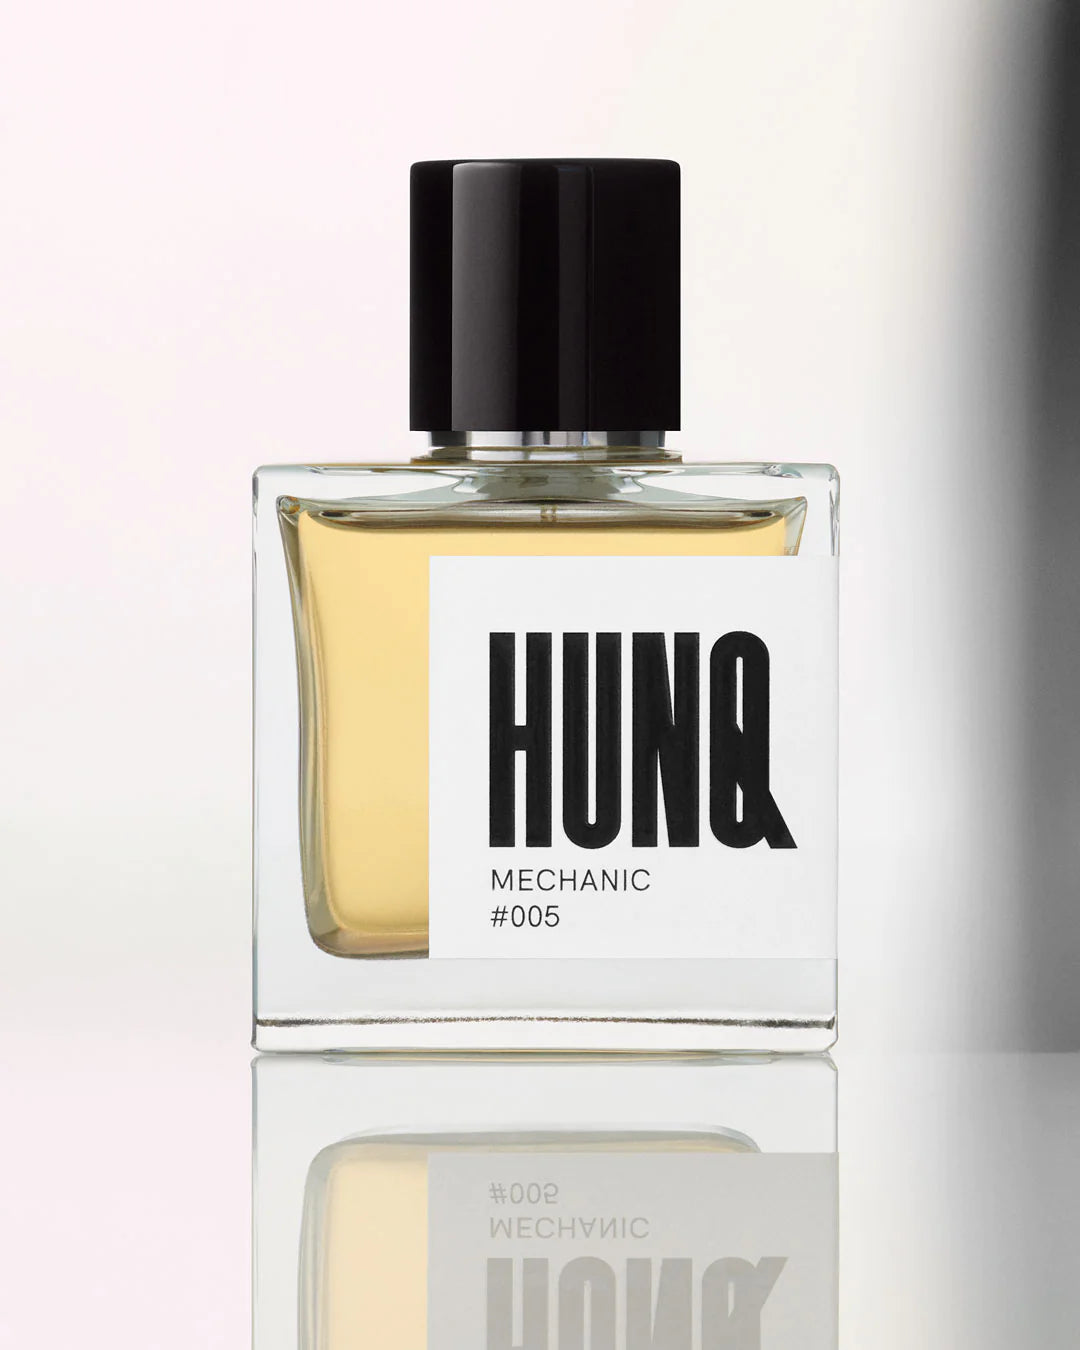 HUNQ - 005 MECHANIC